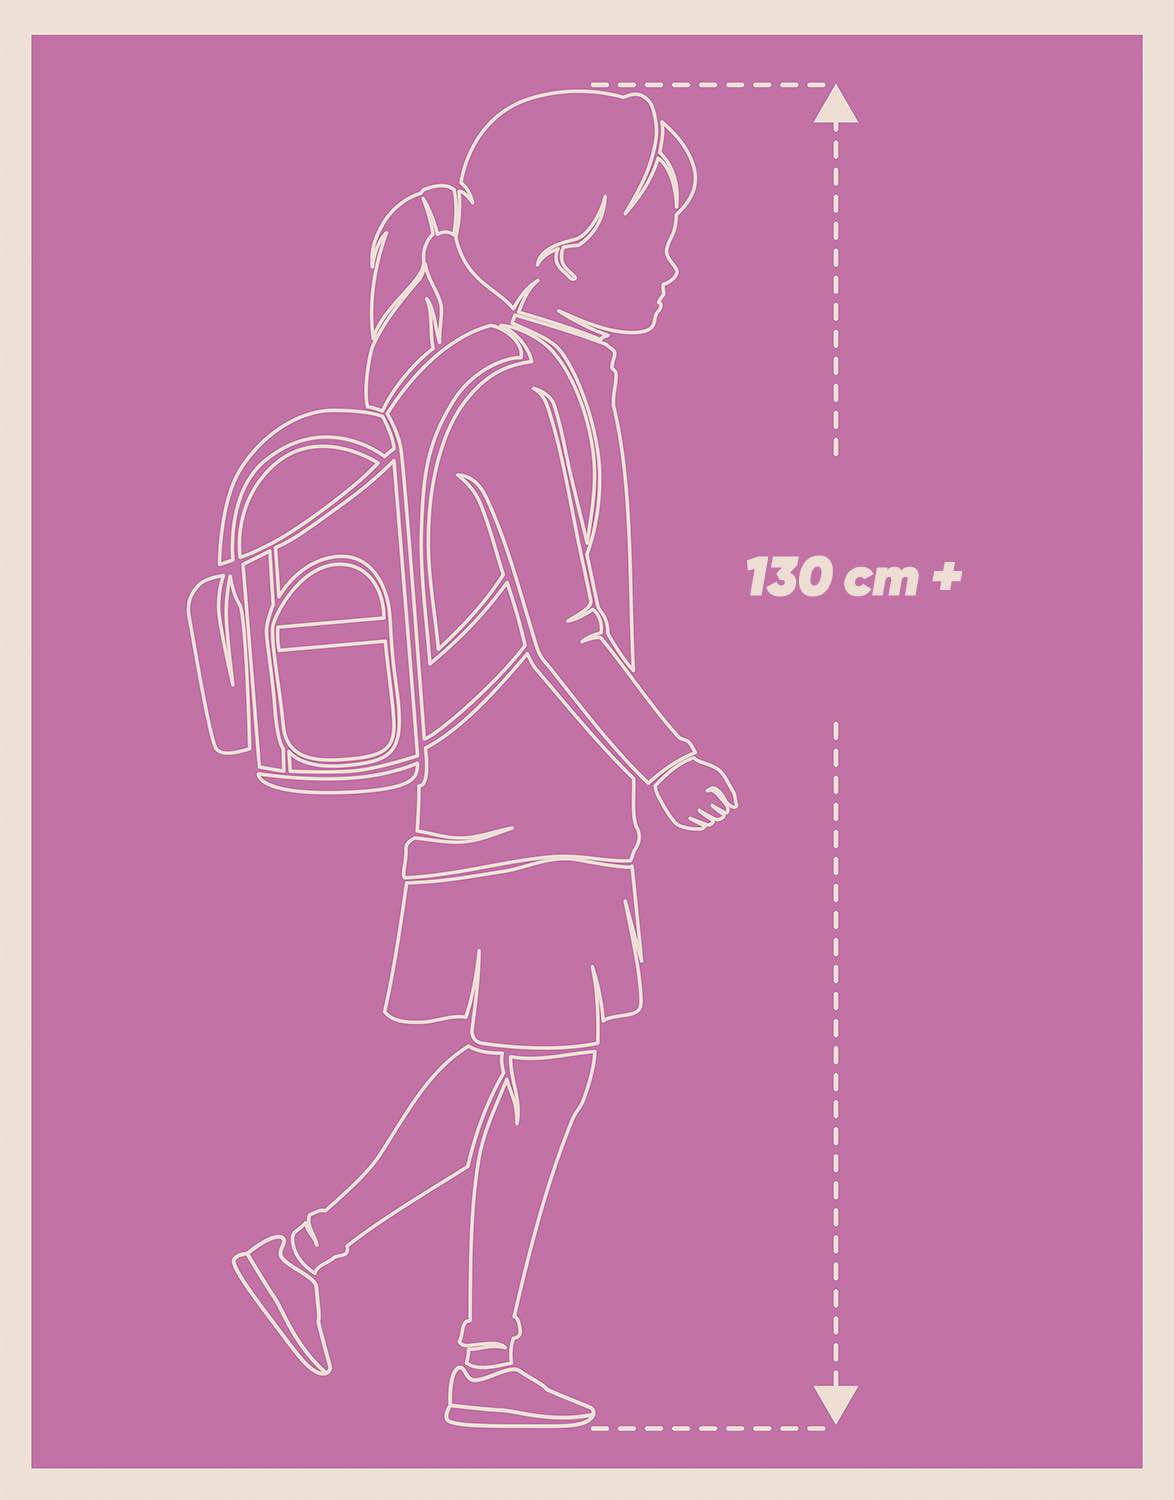 Školní batoh Cubic Zen